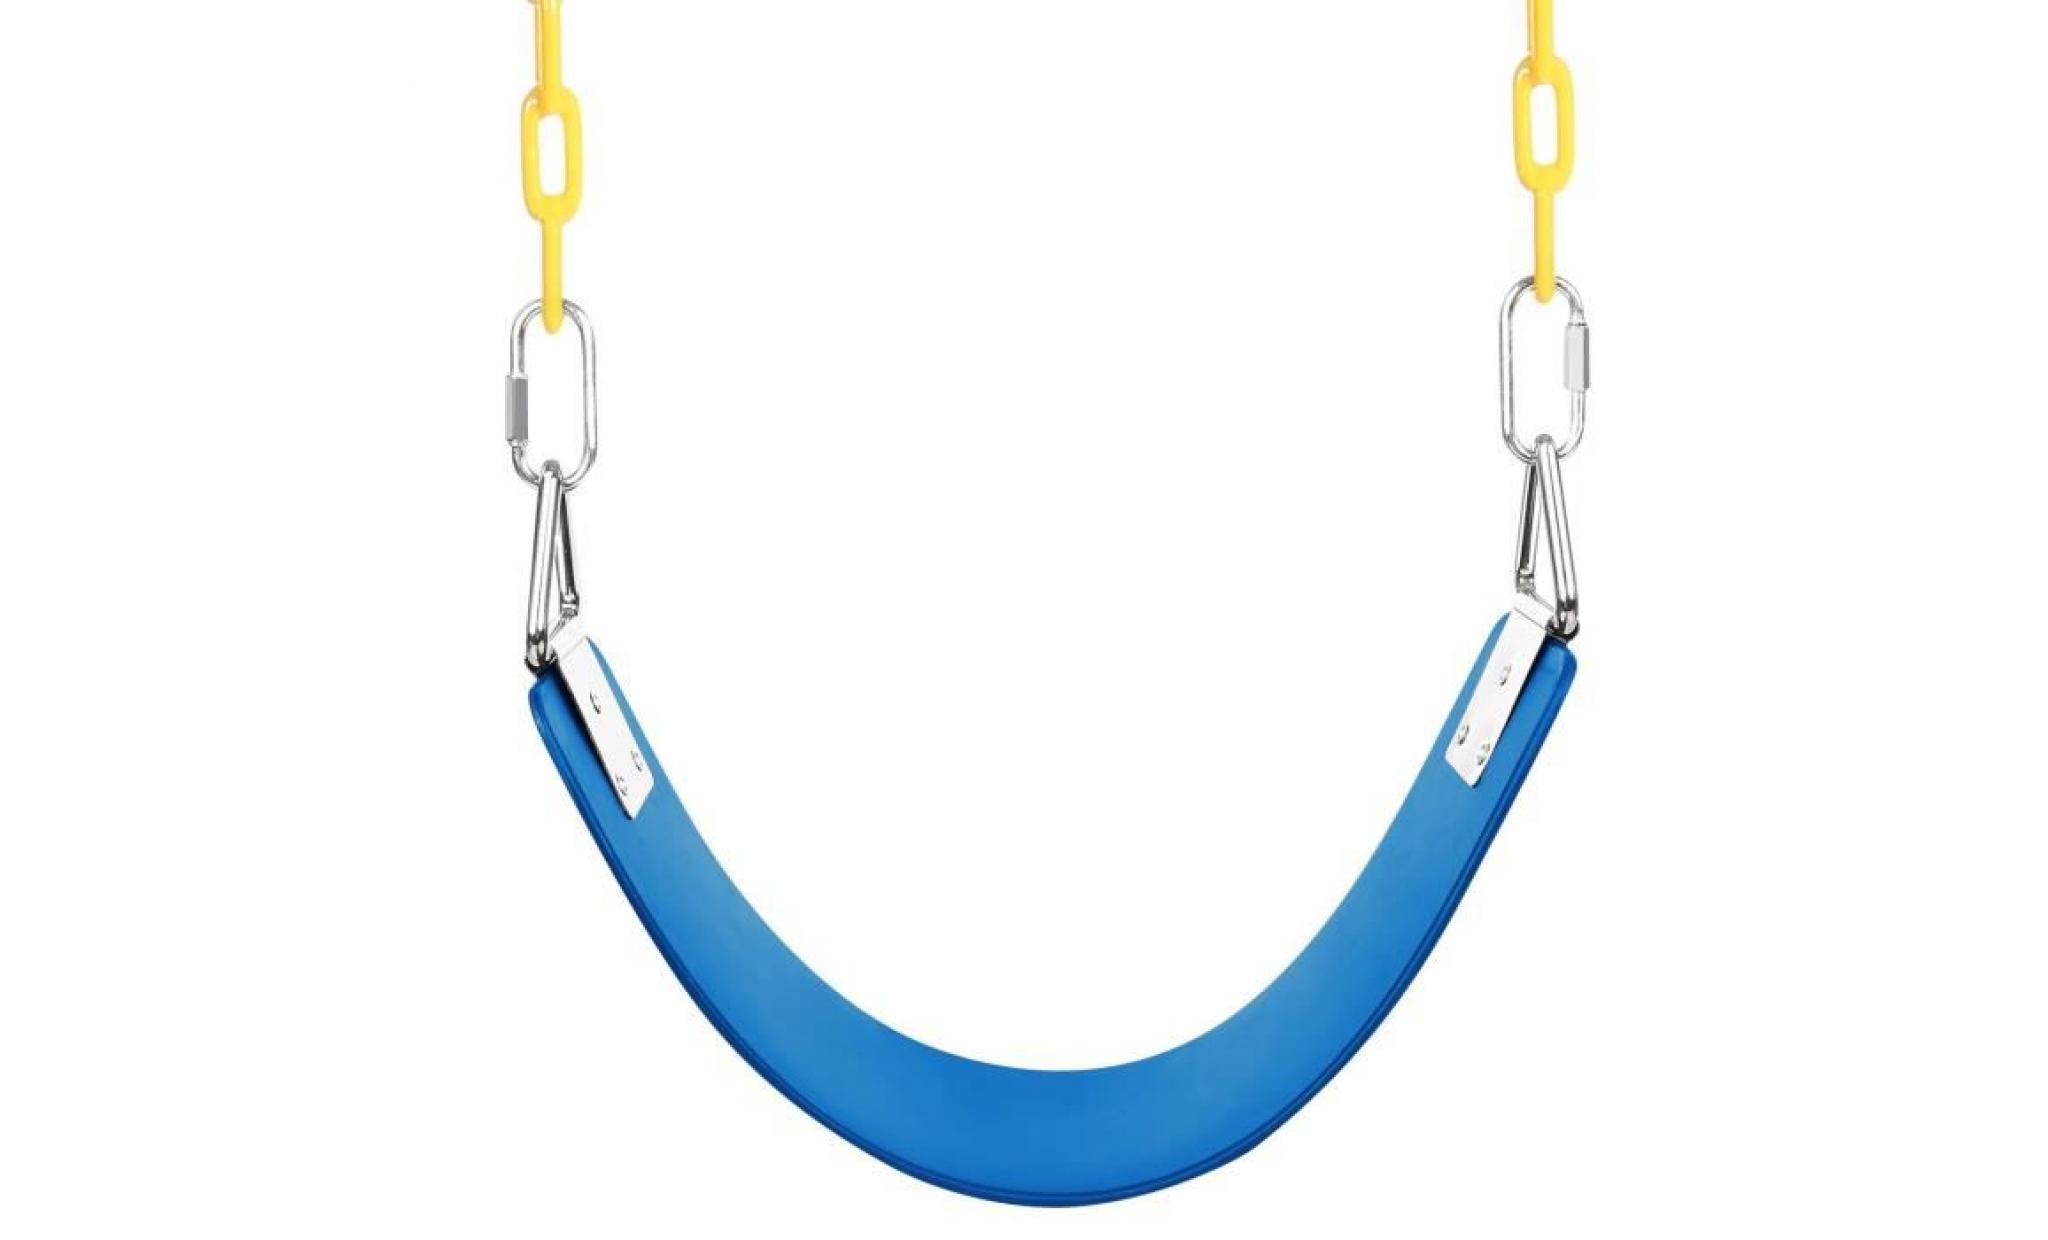 swing set siège de balançoire avec chaîne de fer ensemble   bleu pas cher